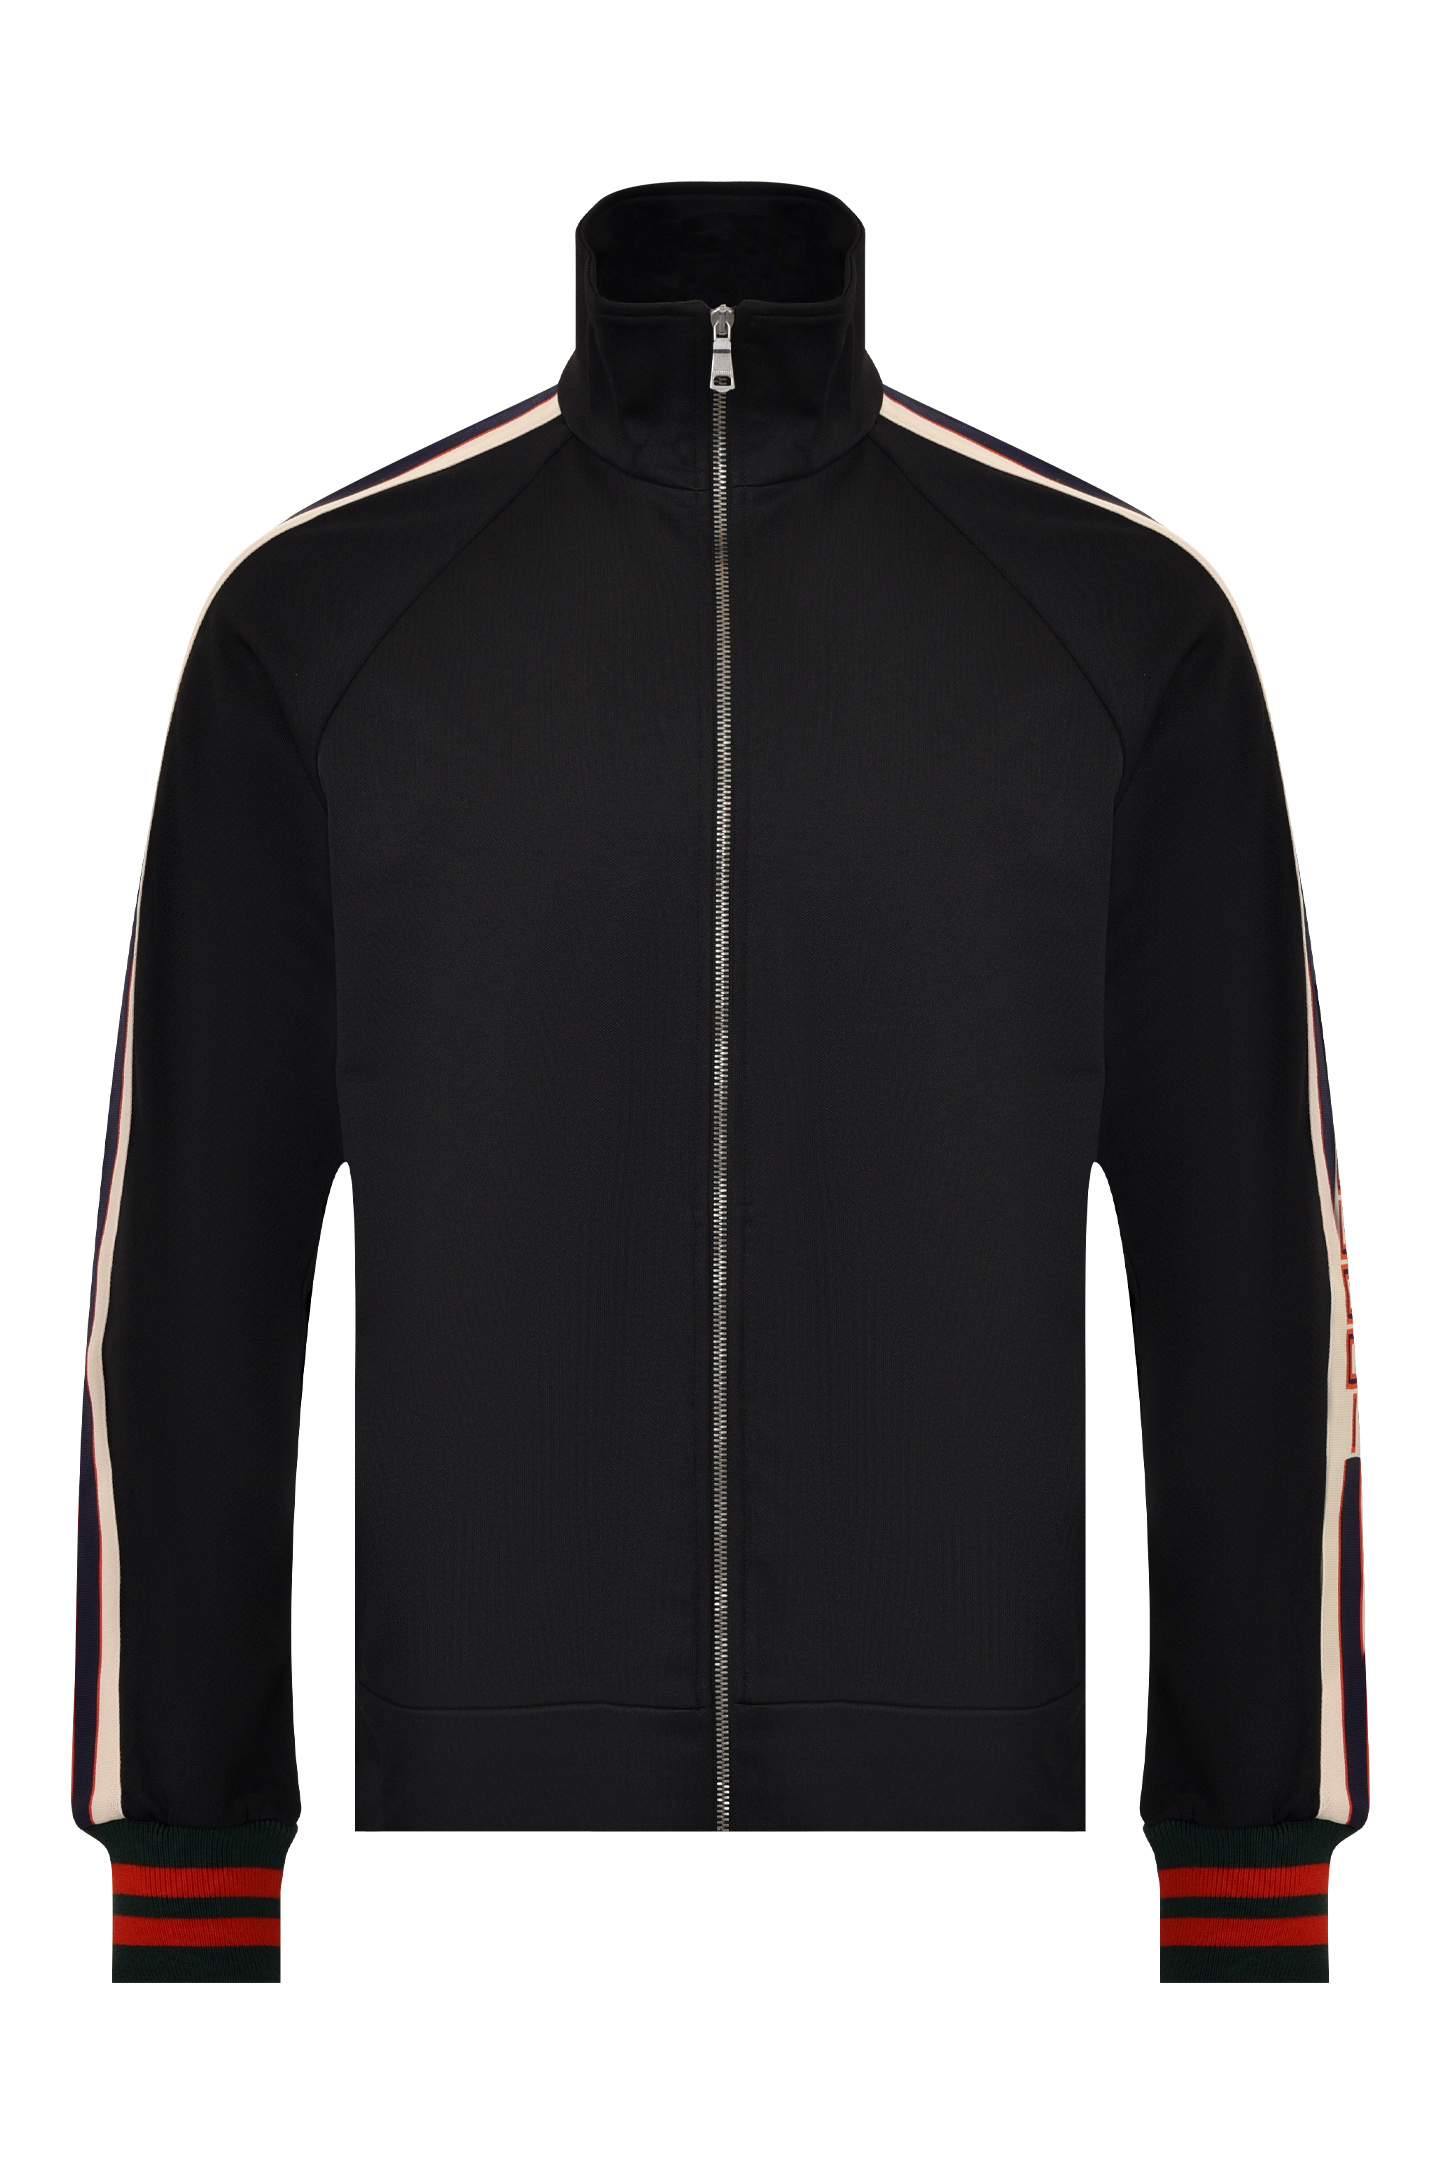 Куртка спорт GUCCI 474634 X5T39, цвет: Черный, Мужской